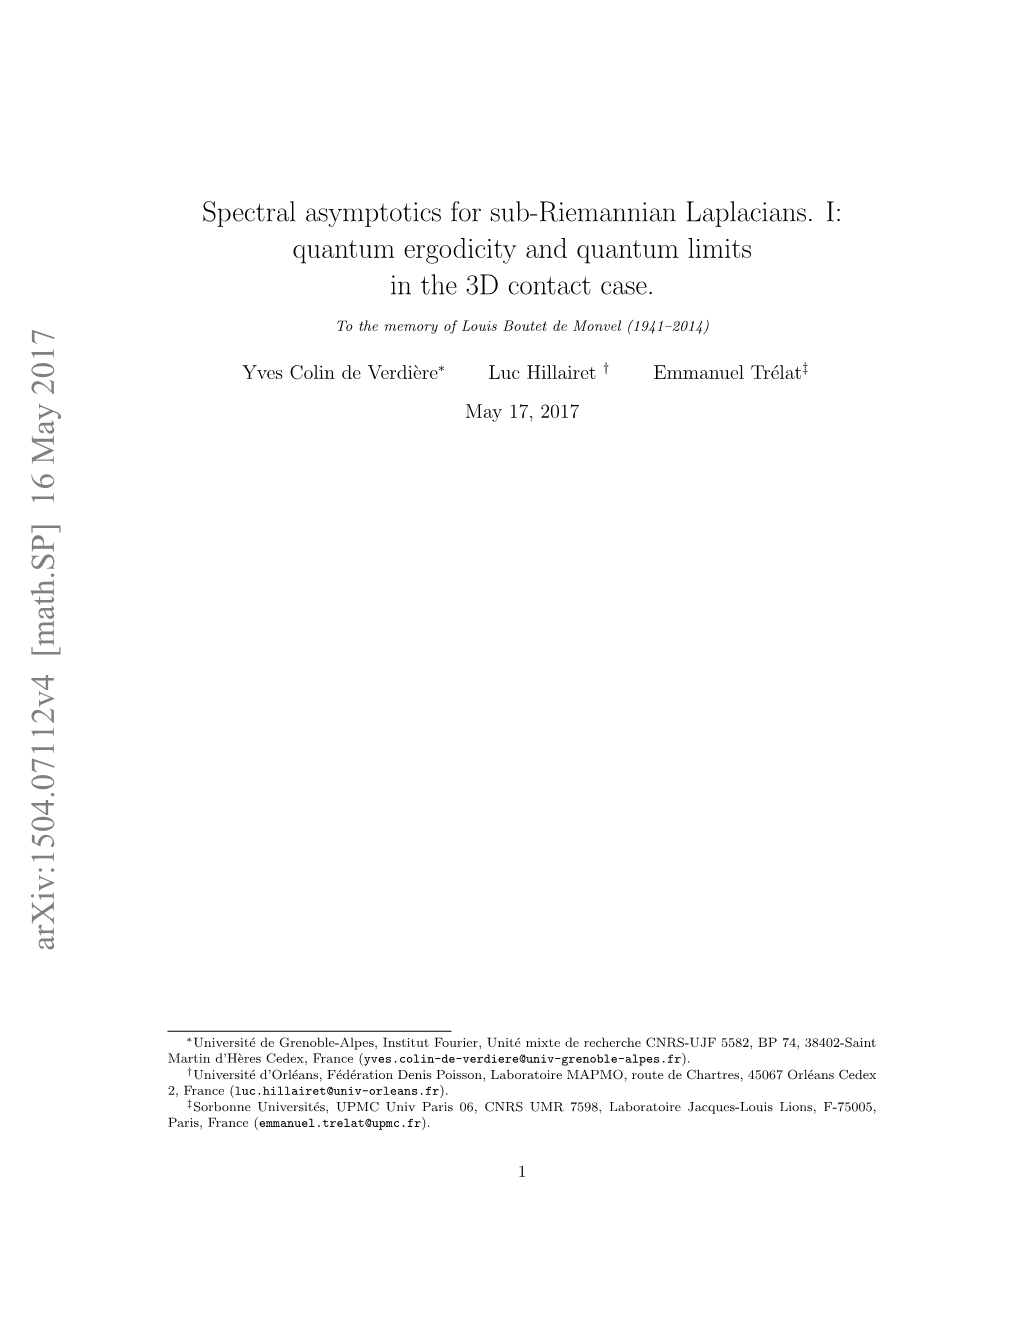 Spectral Asymptotics for Sub-Riemannian Laplacians. I: Quantum Ergodicity and Quantum Limits in the 3D Contact Case